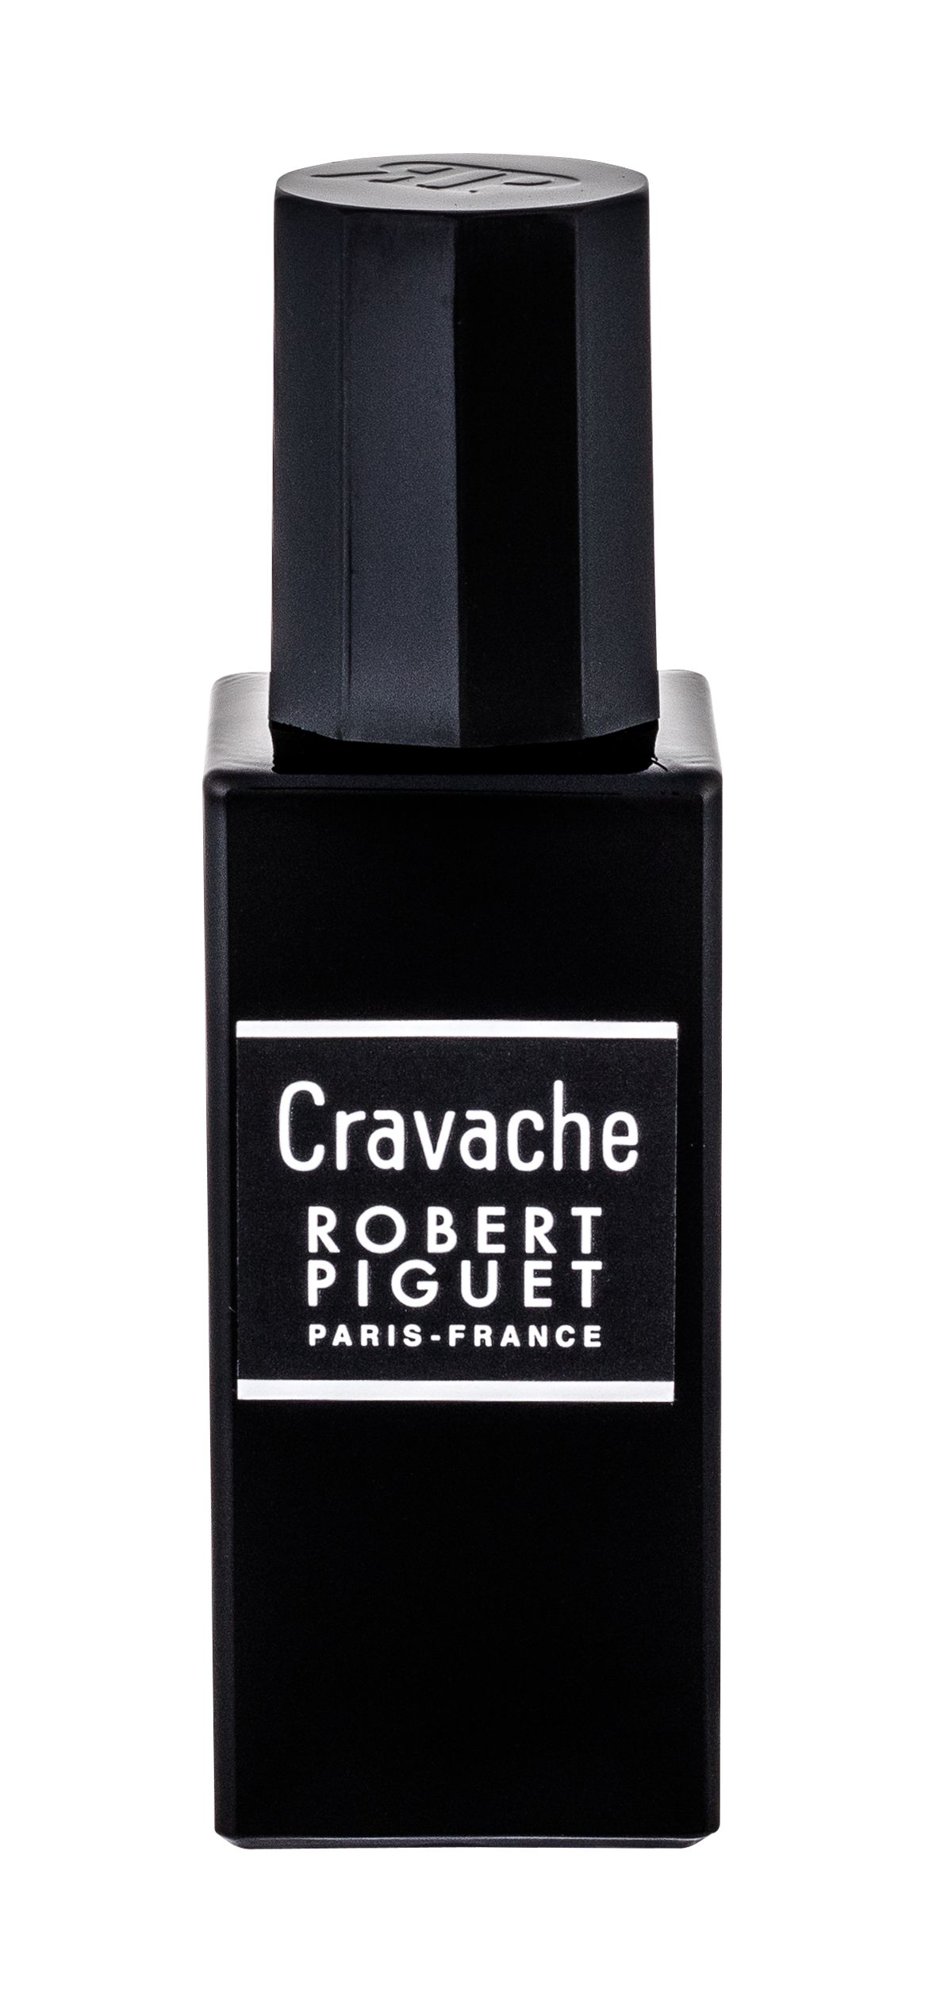 Robert Piguet Cravache